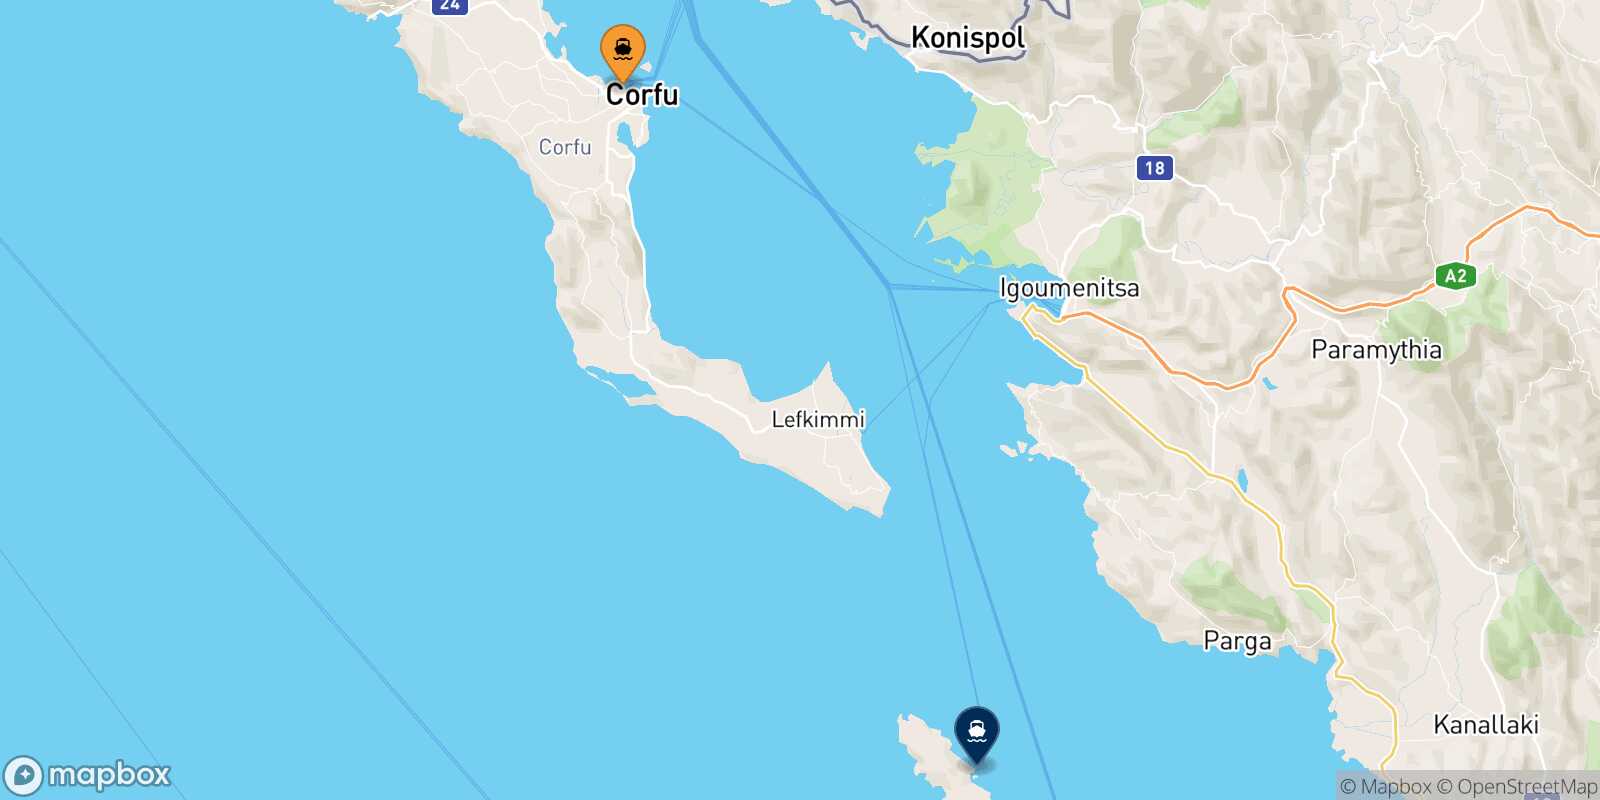 Mapa de la ruta Corfu Paxos